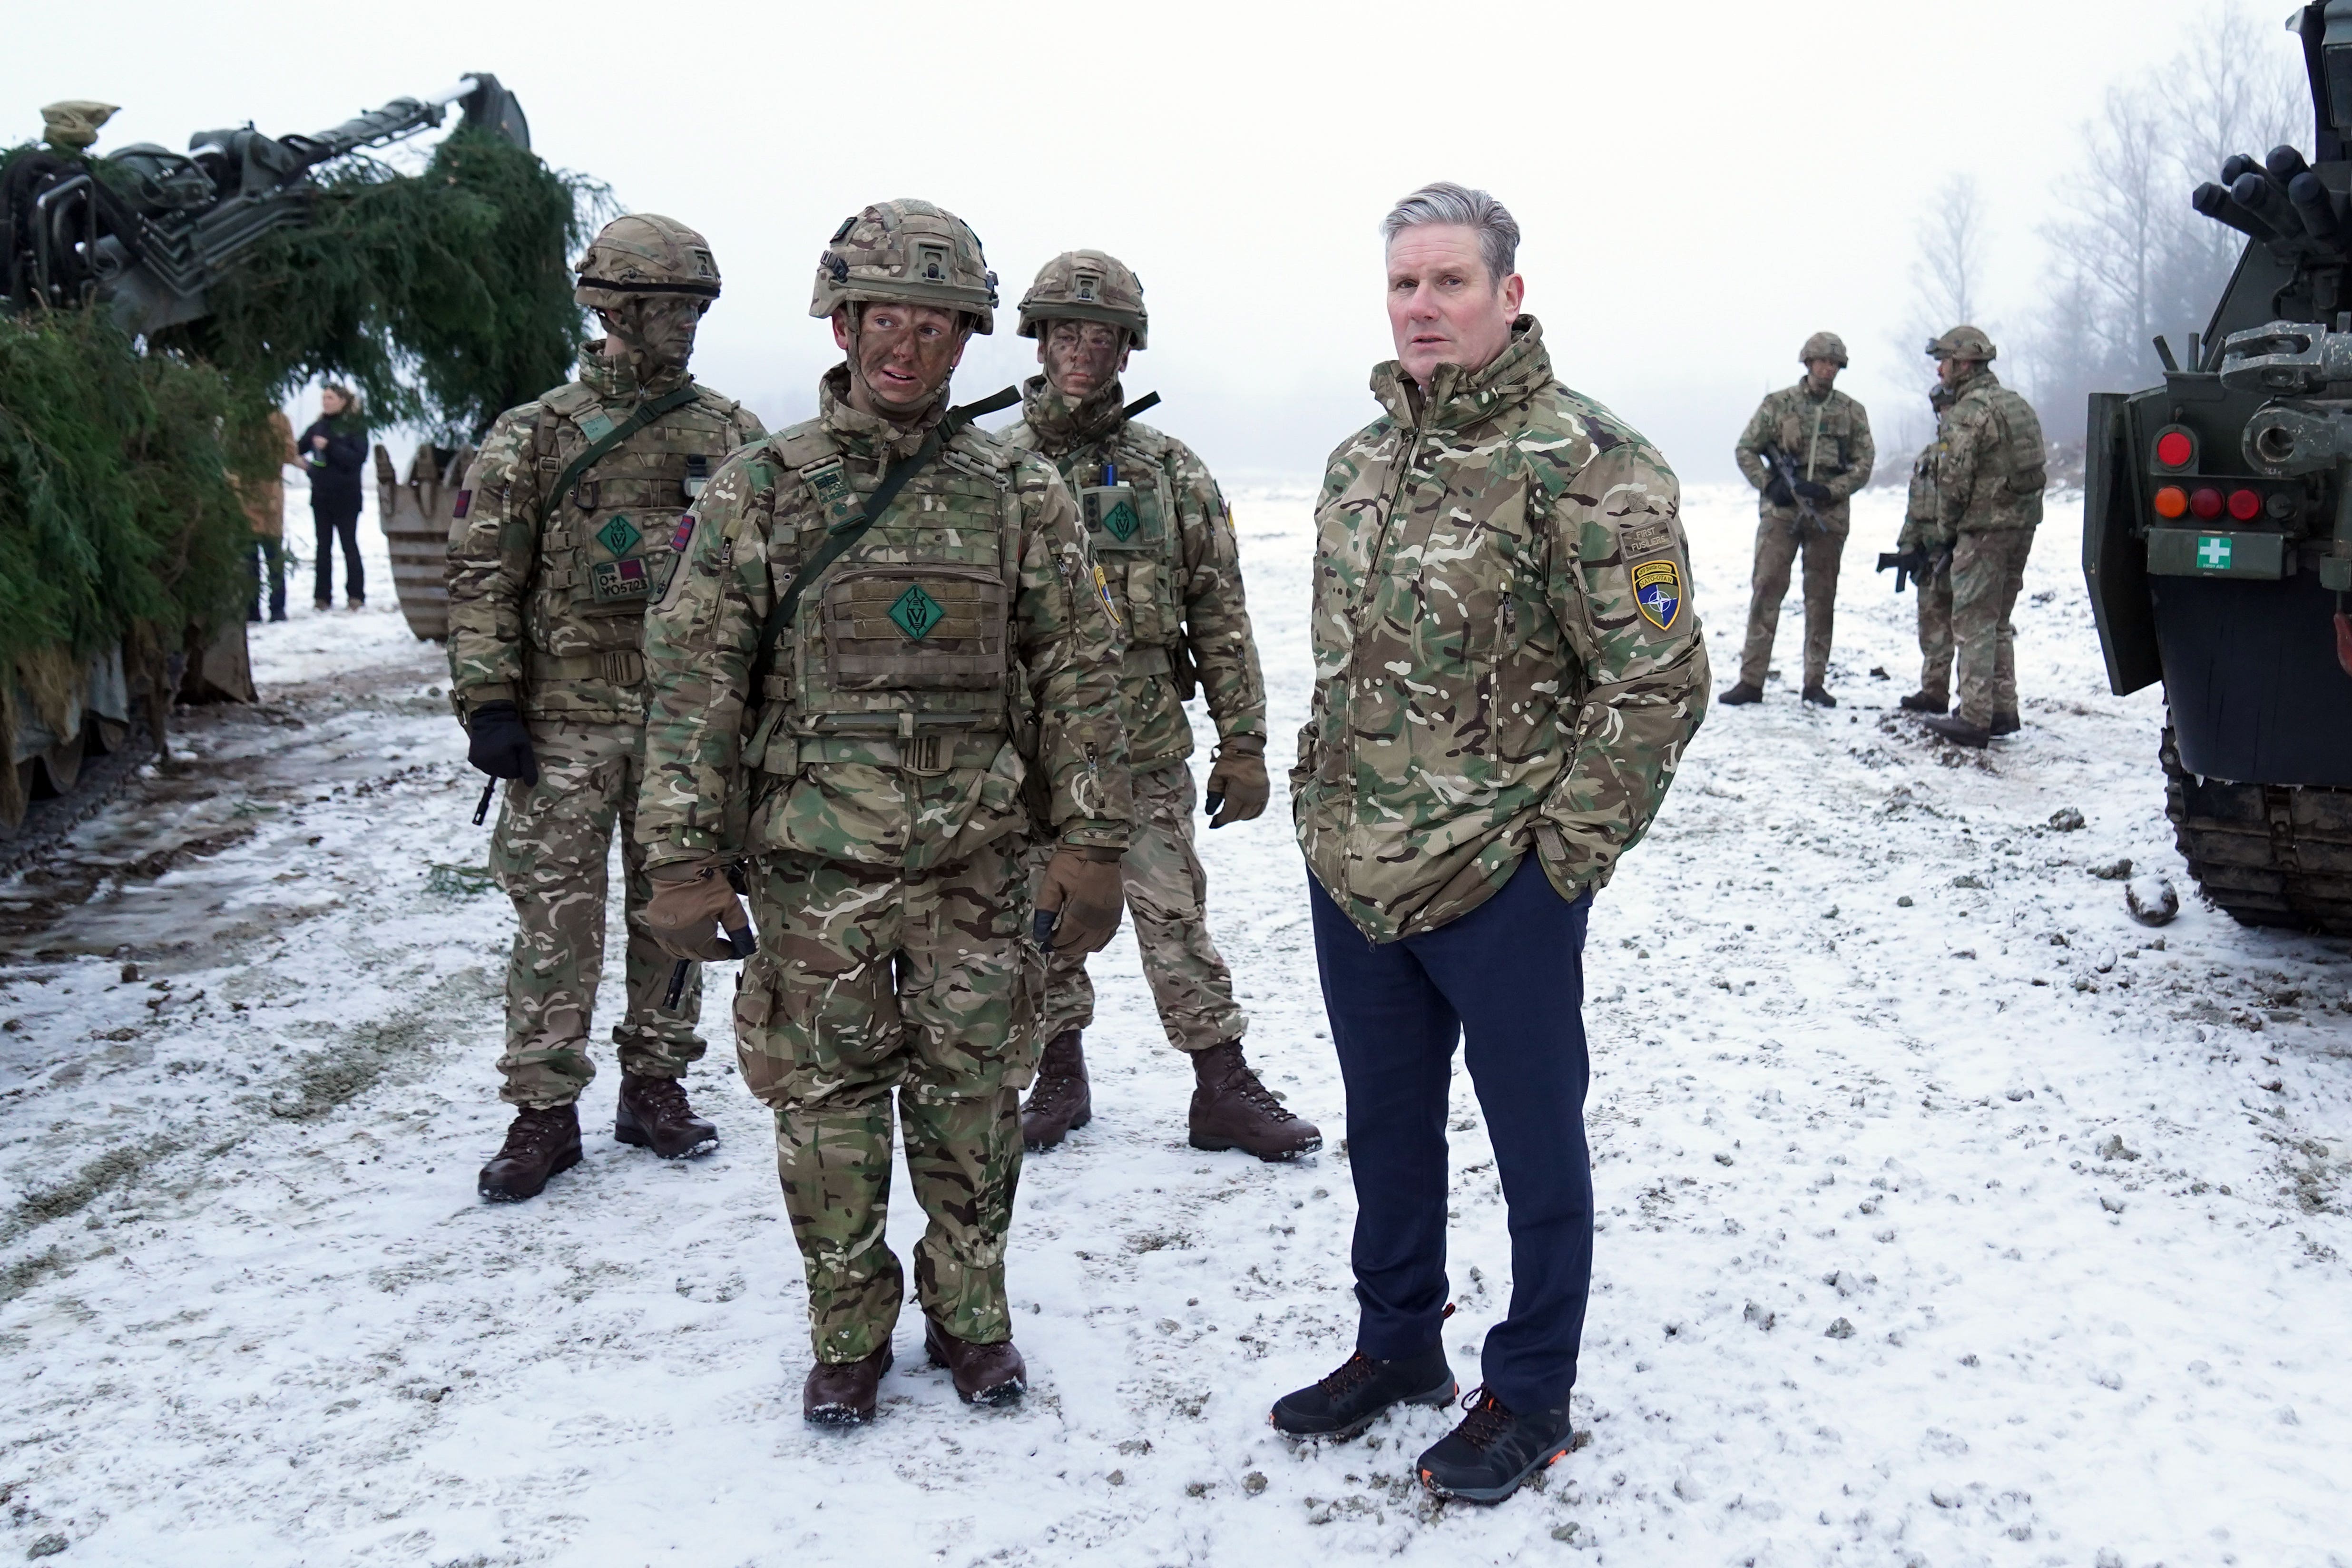 Keir Starmer is in Estonia to visit British troops